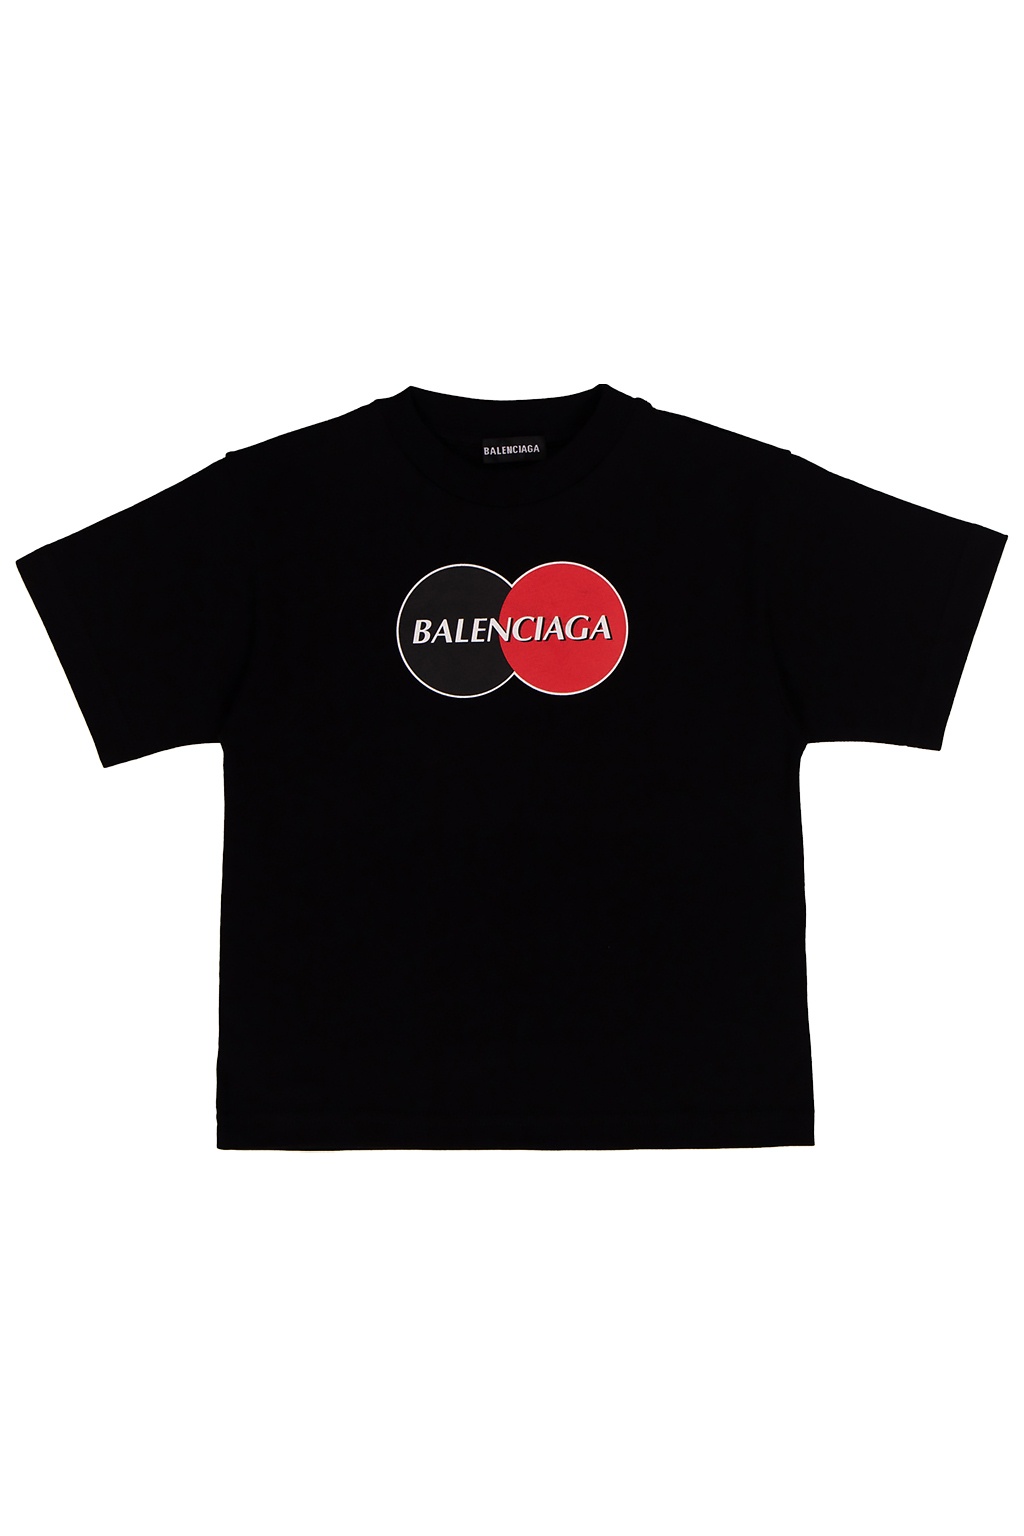 balenciaga black logo shirt